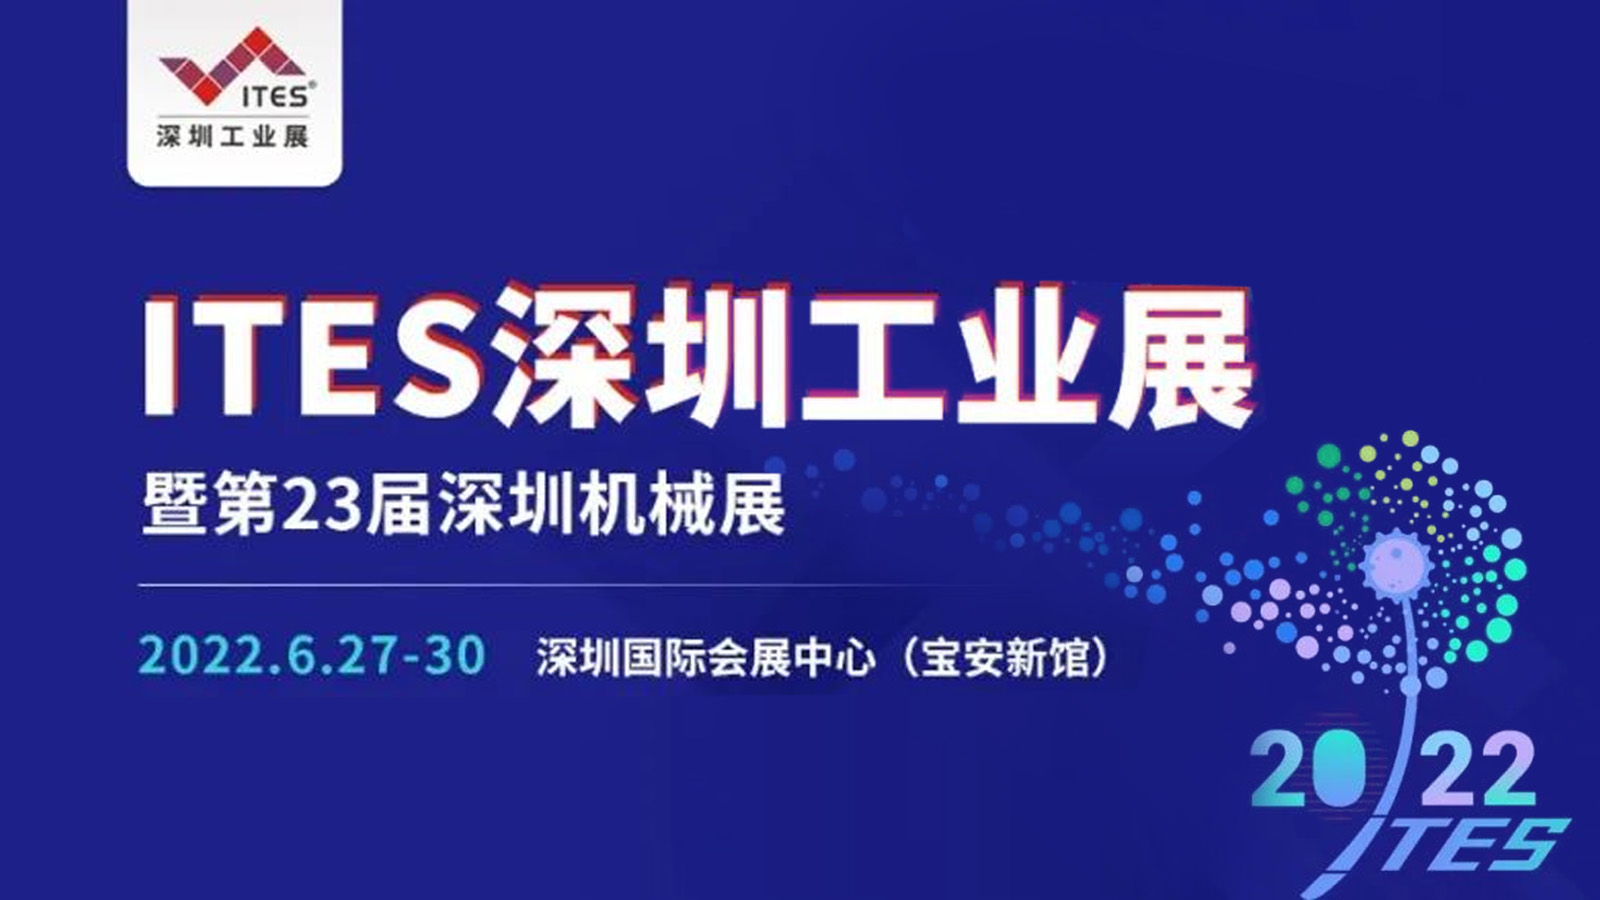 ITES 深圳工业展暨第23届深圳机械展